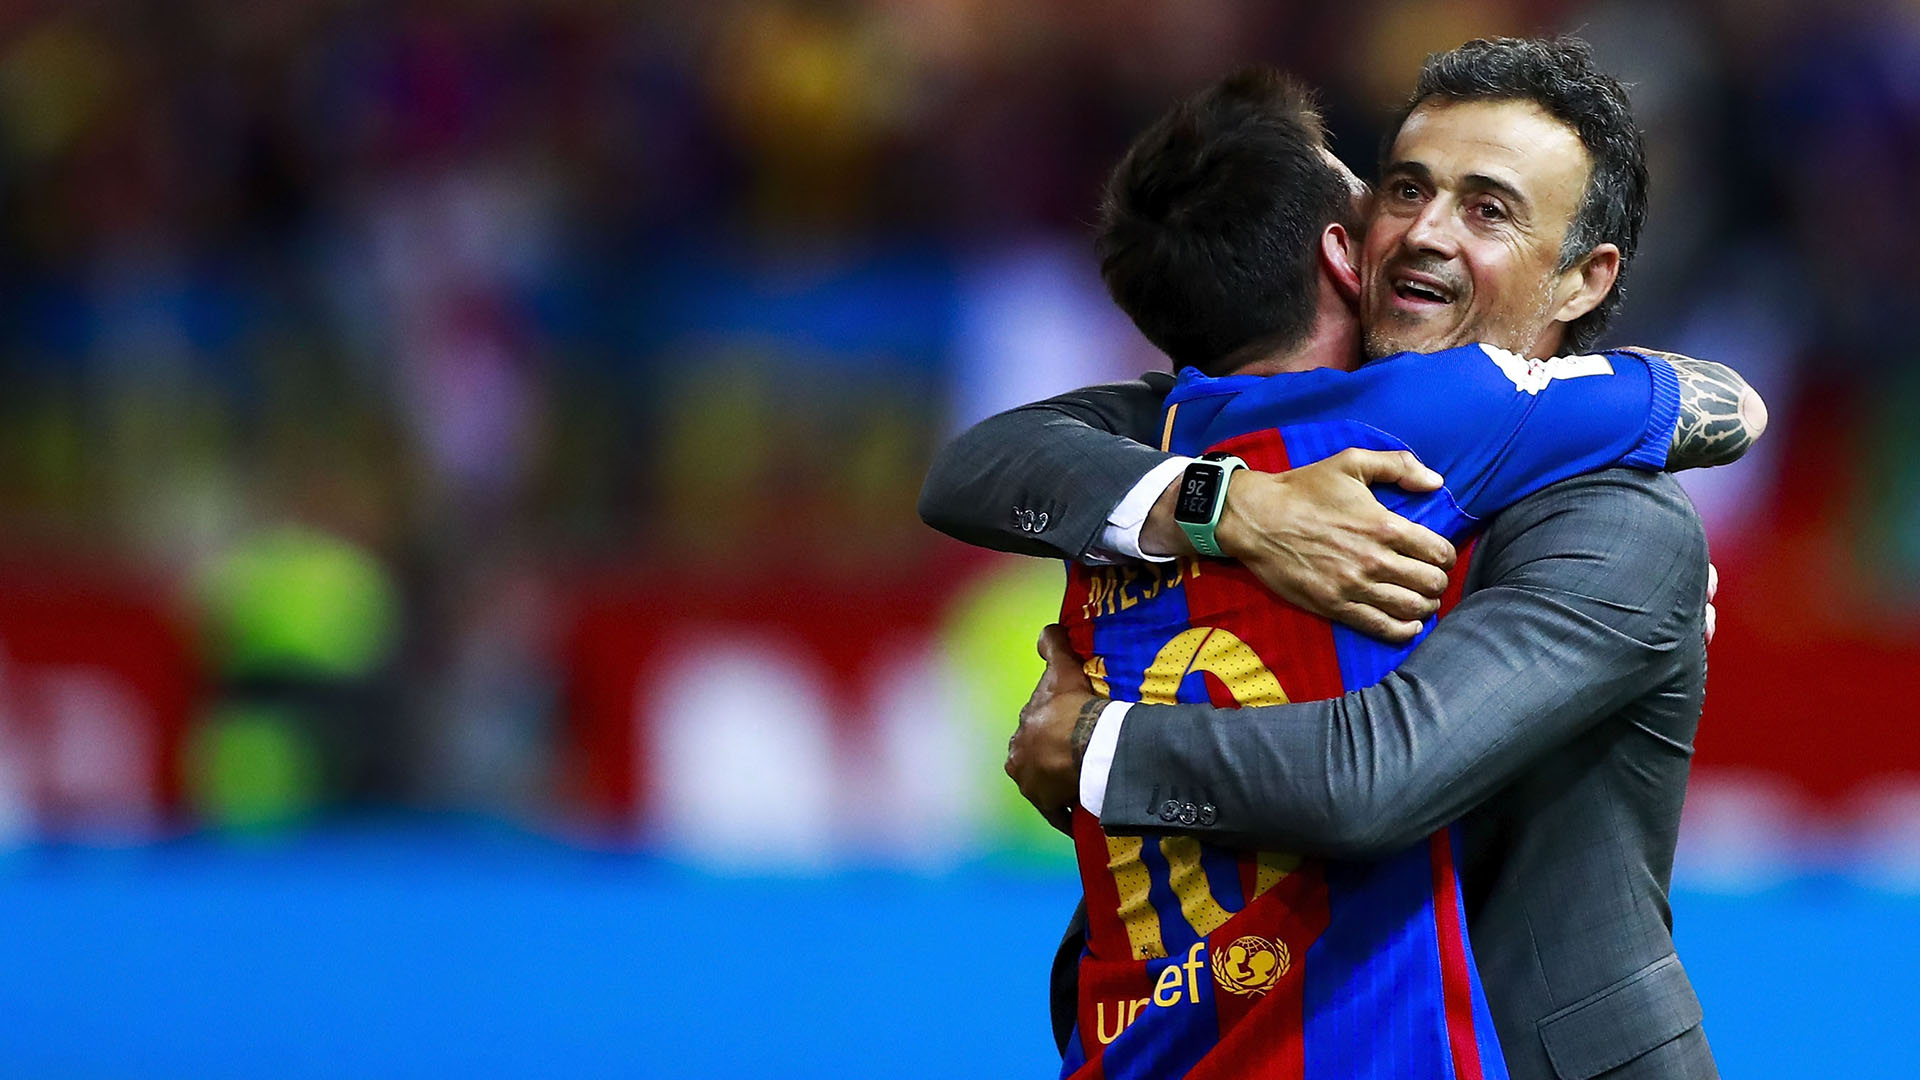 El abrazo entre el Messi jugador y el Luis Enrique entrenador. Los dos reconocieron haber tenido un relación tumultuosa al principio (Getty Images)